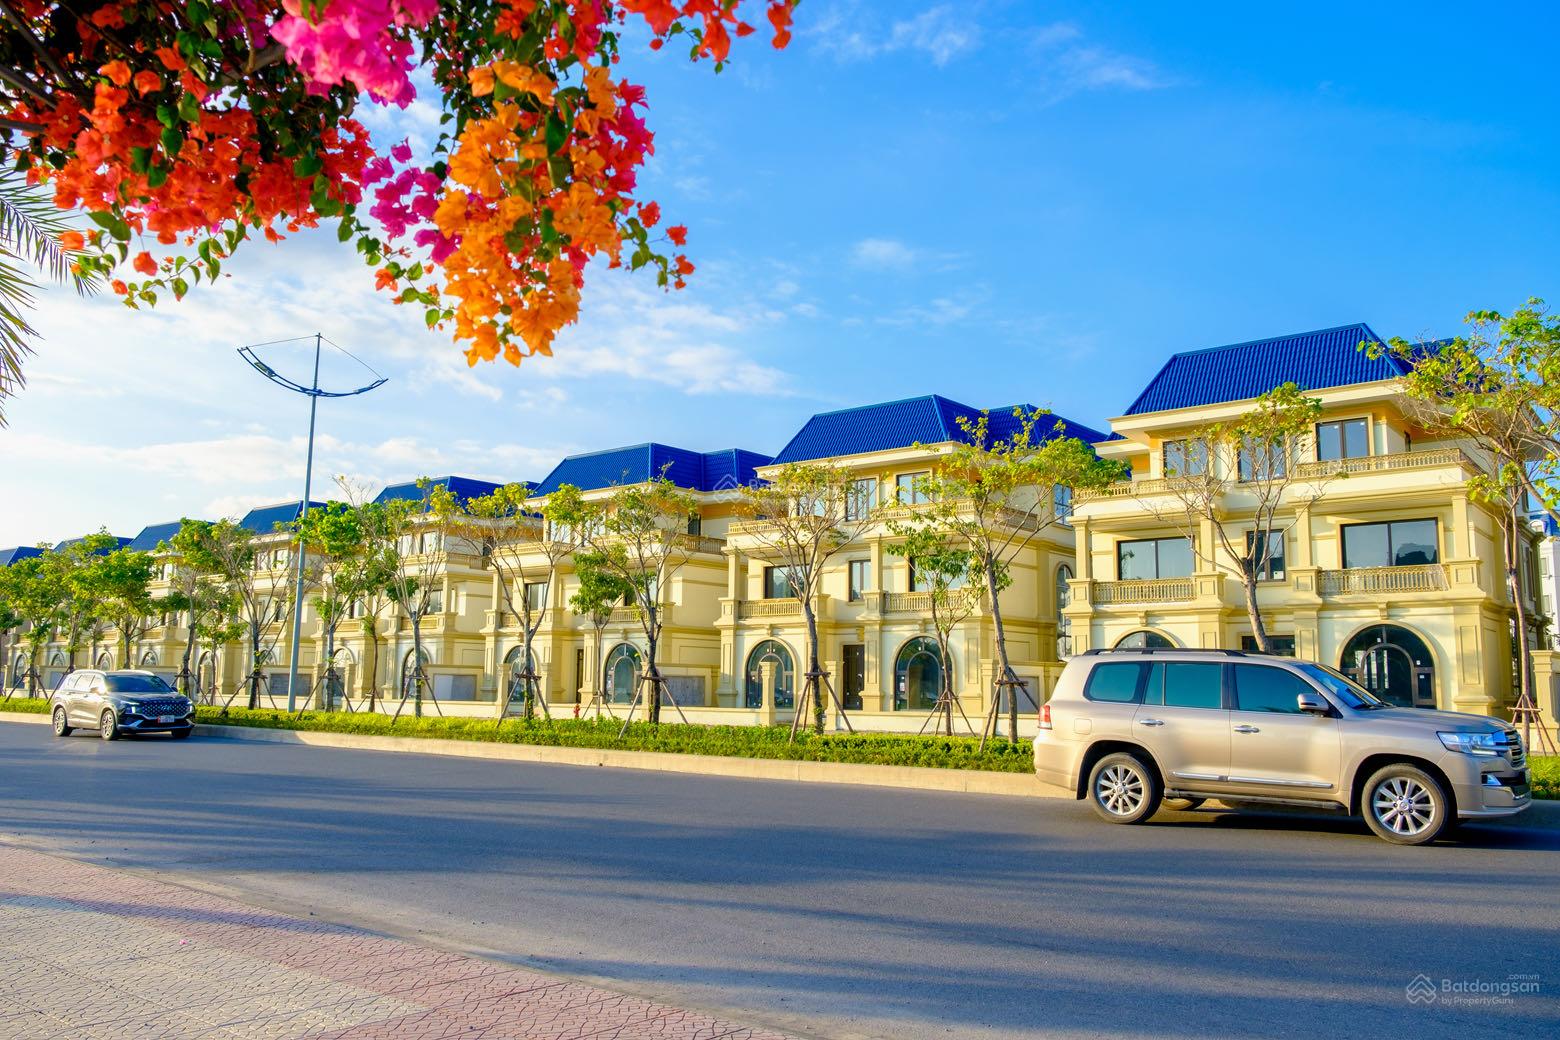 Vịnh giải trí Safabay Cẩm Phả đón đầu chu kỳ tăng trưởng mới của thị trường